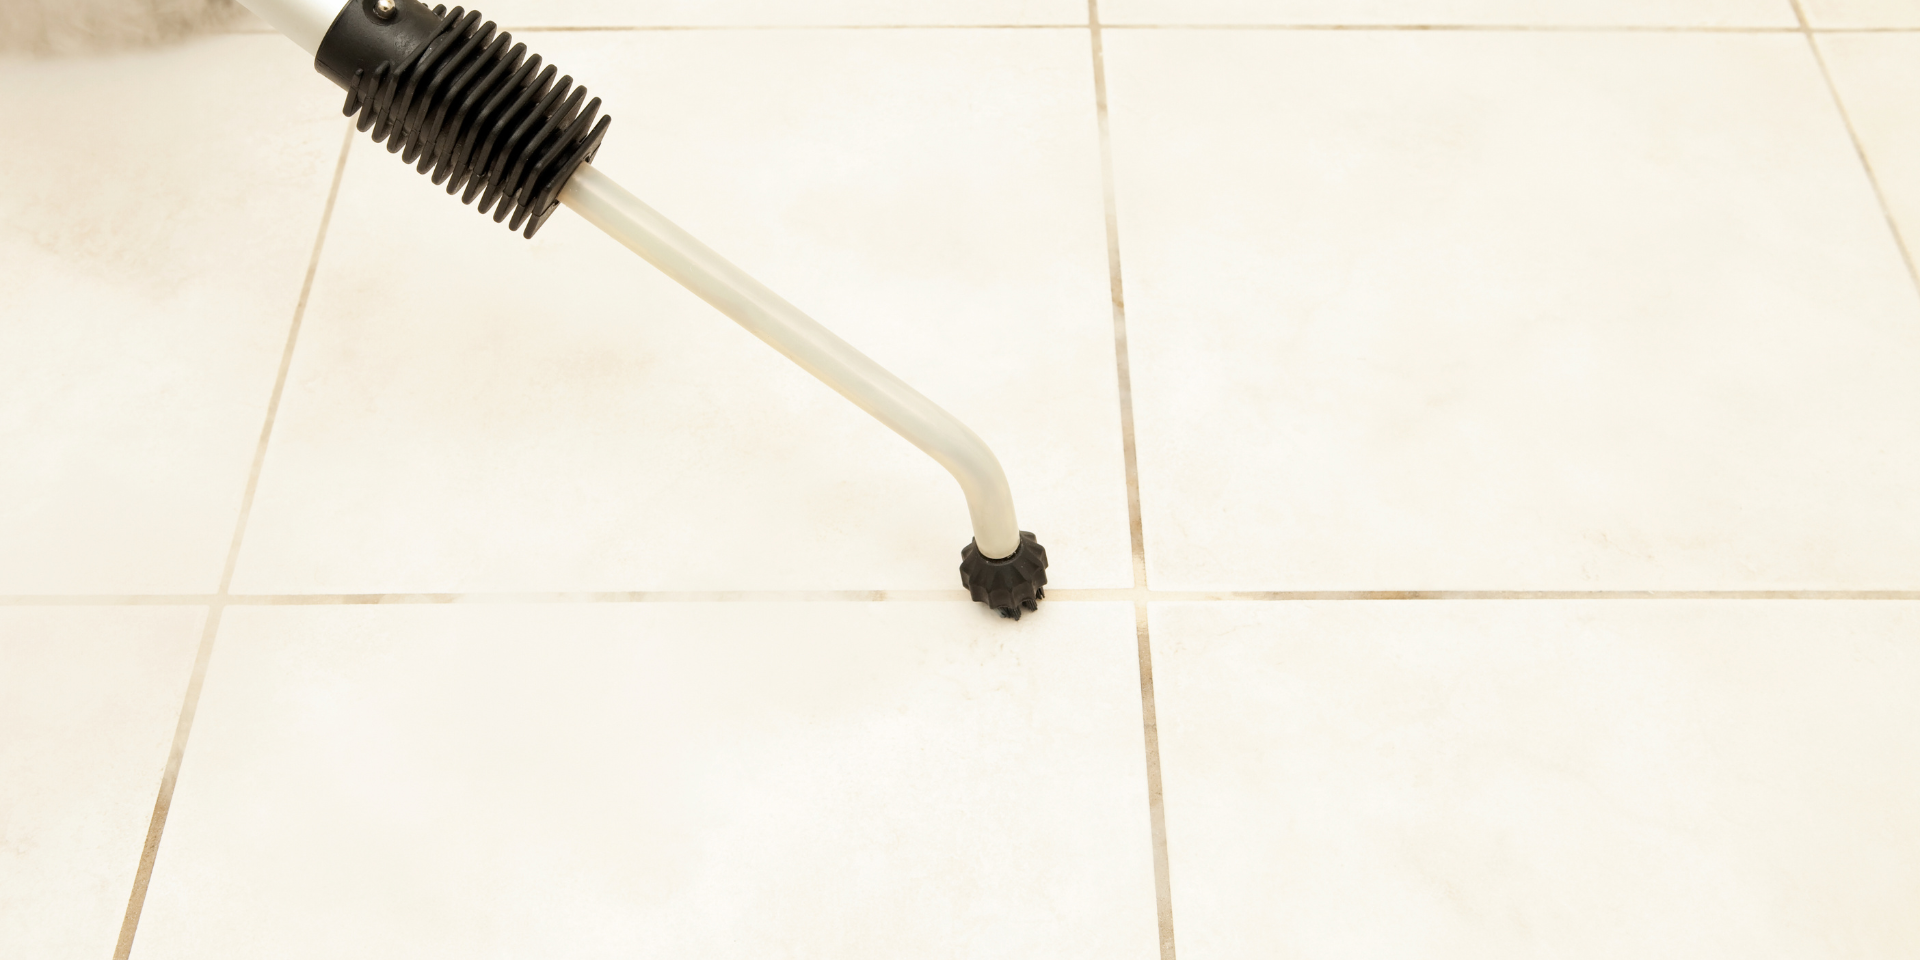 تمیز کردن کف حمام با بخارشو